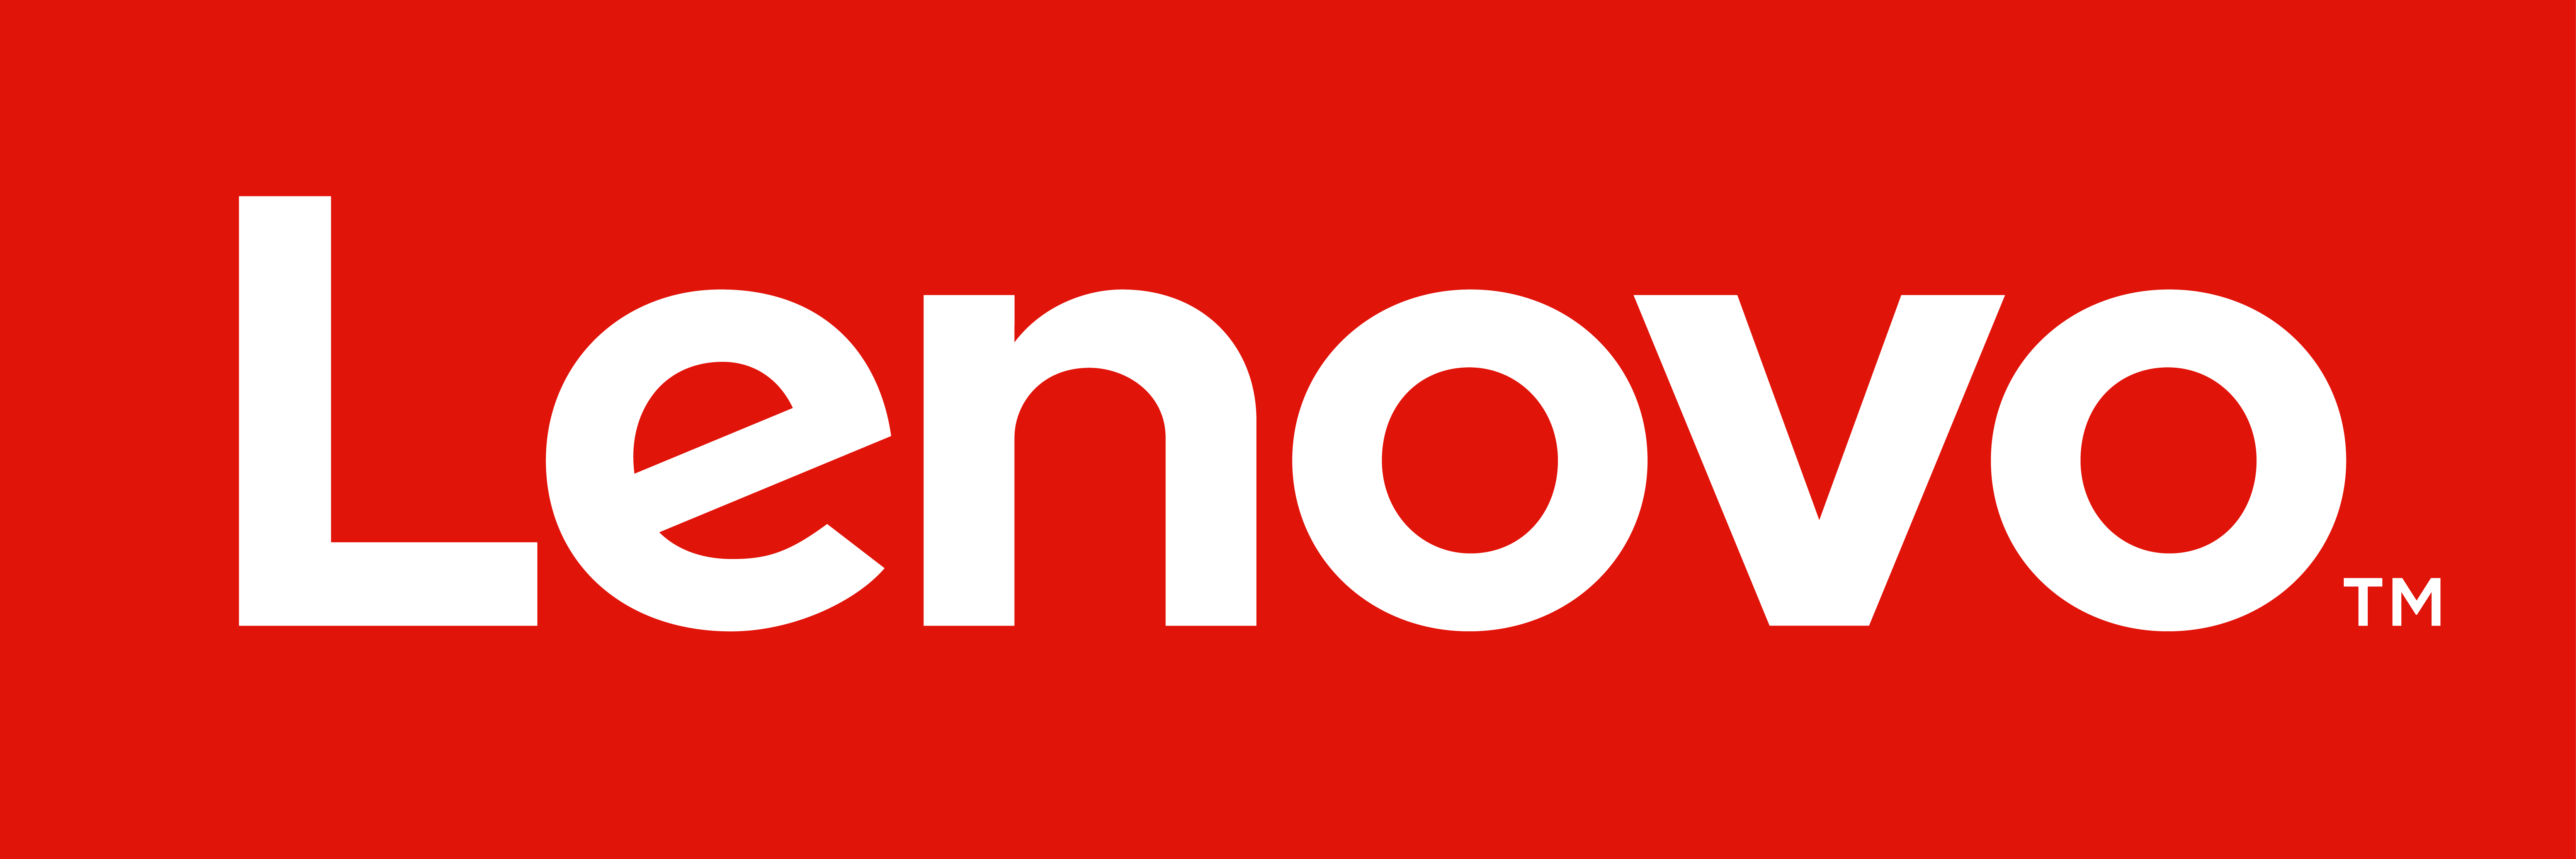 The Lenovo logo.